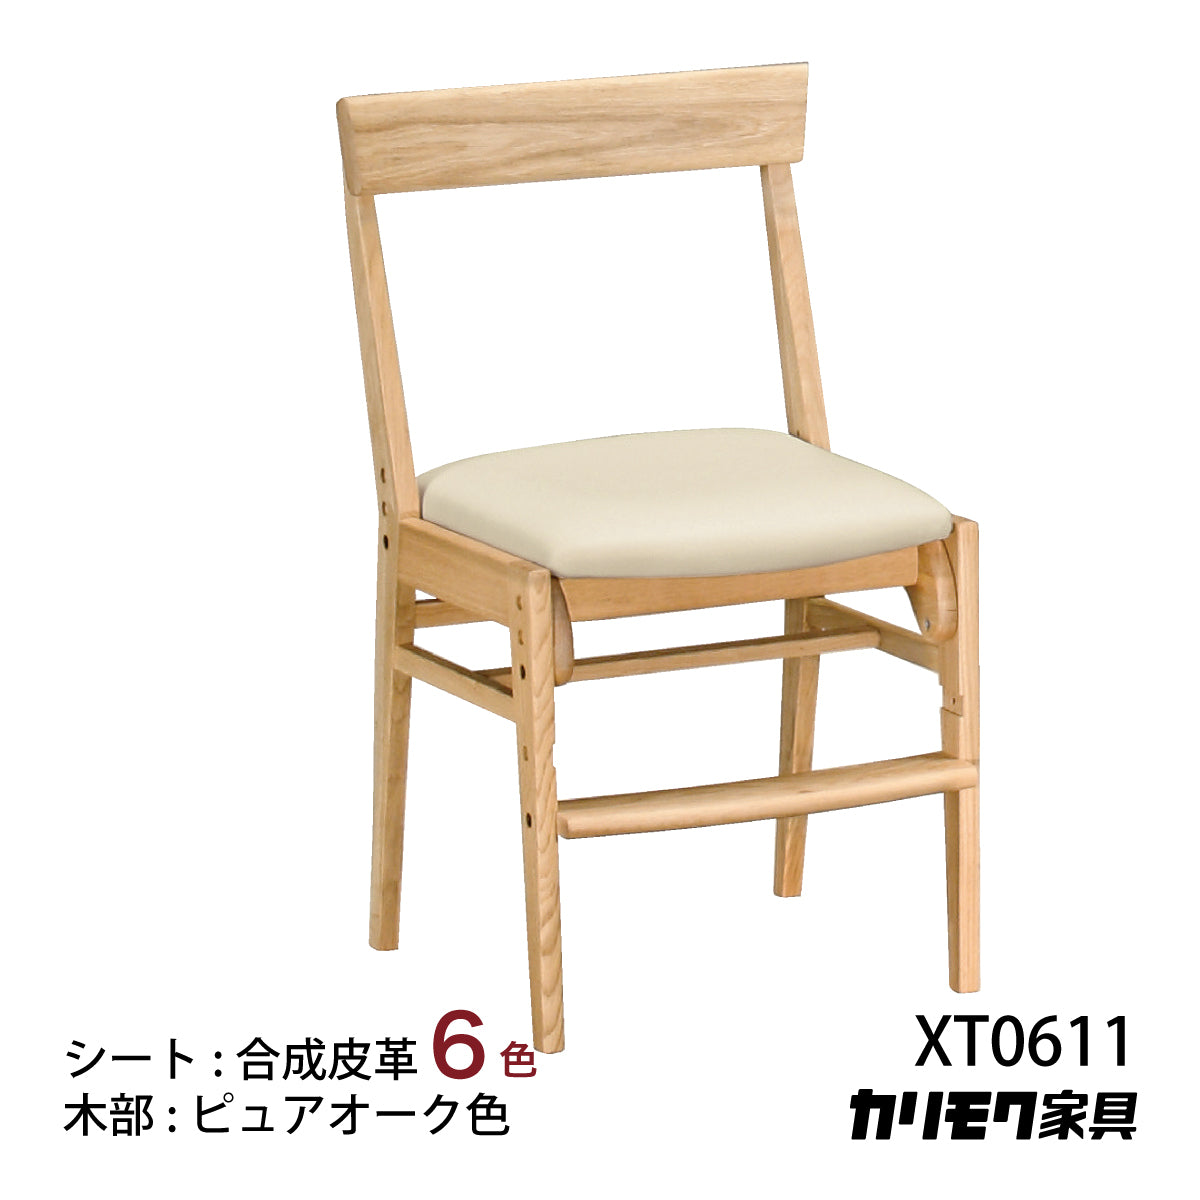 カリモク 椅子 学習椅子 XT0611 ピュアオーク色 デスクチェア 子供椅子 